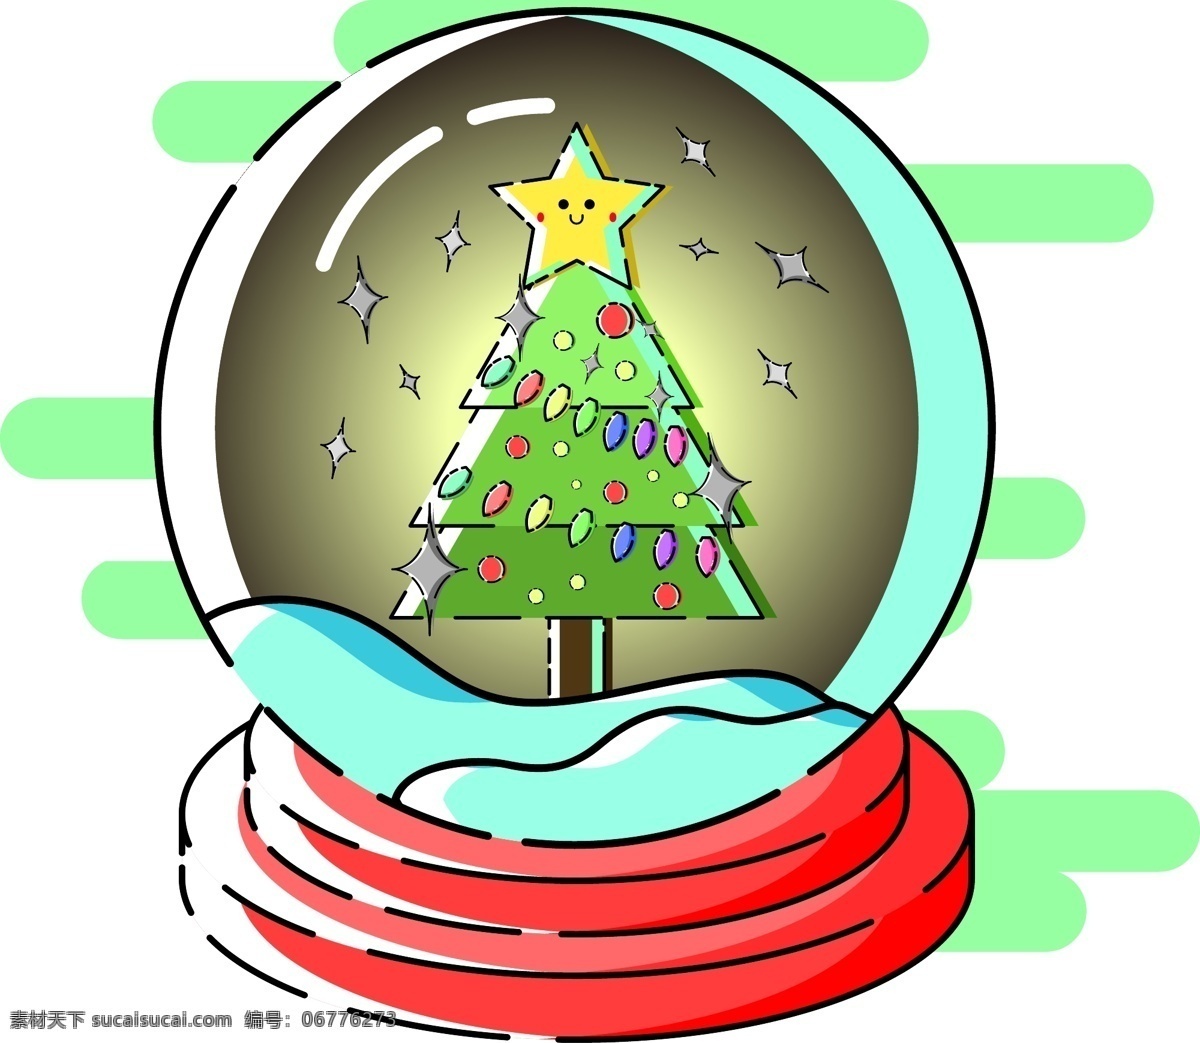 商用 矢量 扁平化 mbe 风格 水晶球 元素 圣诞节 海报素材 mbe风格 圣诞 圣诞水晶球